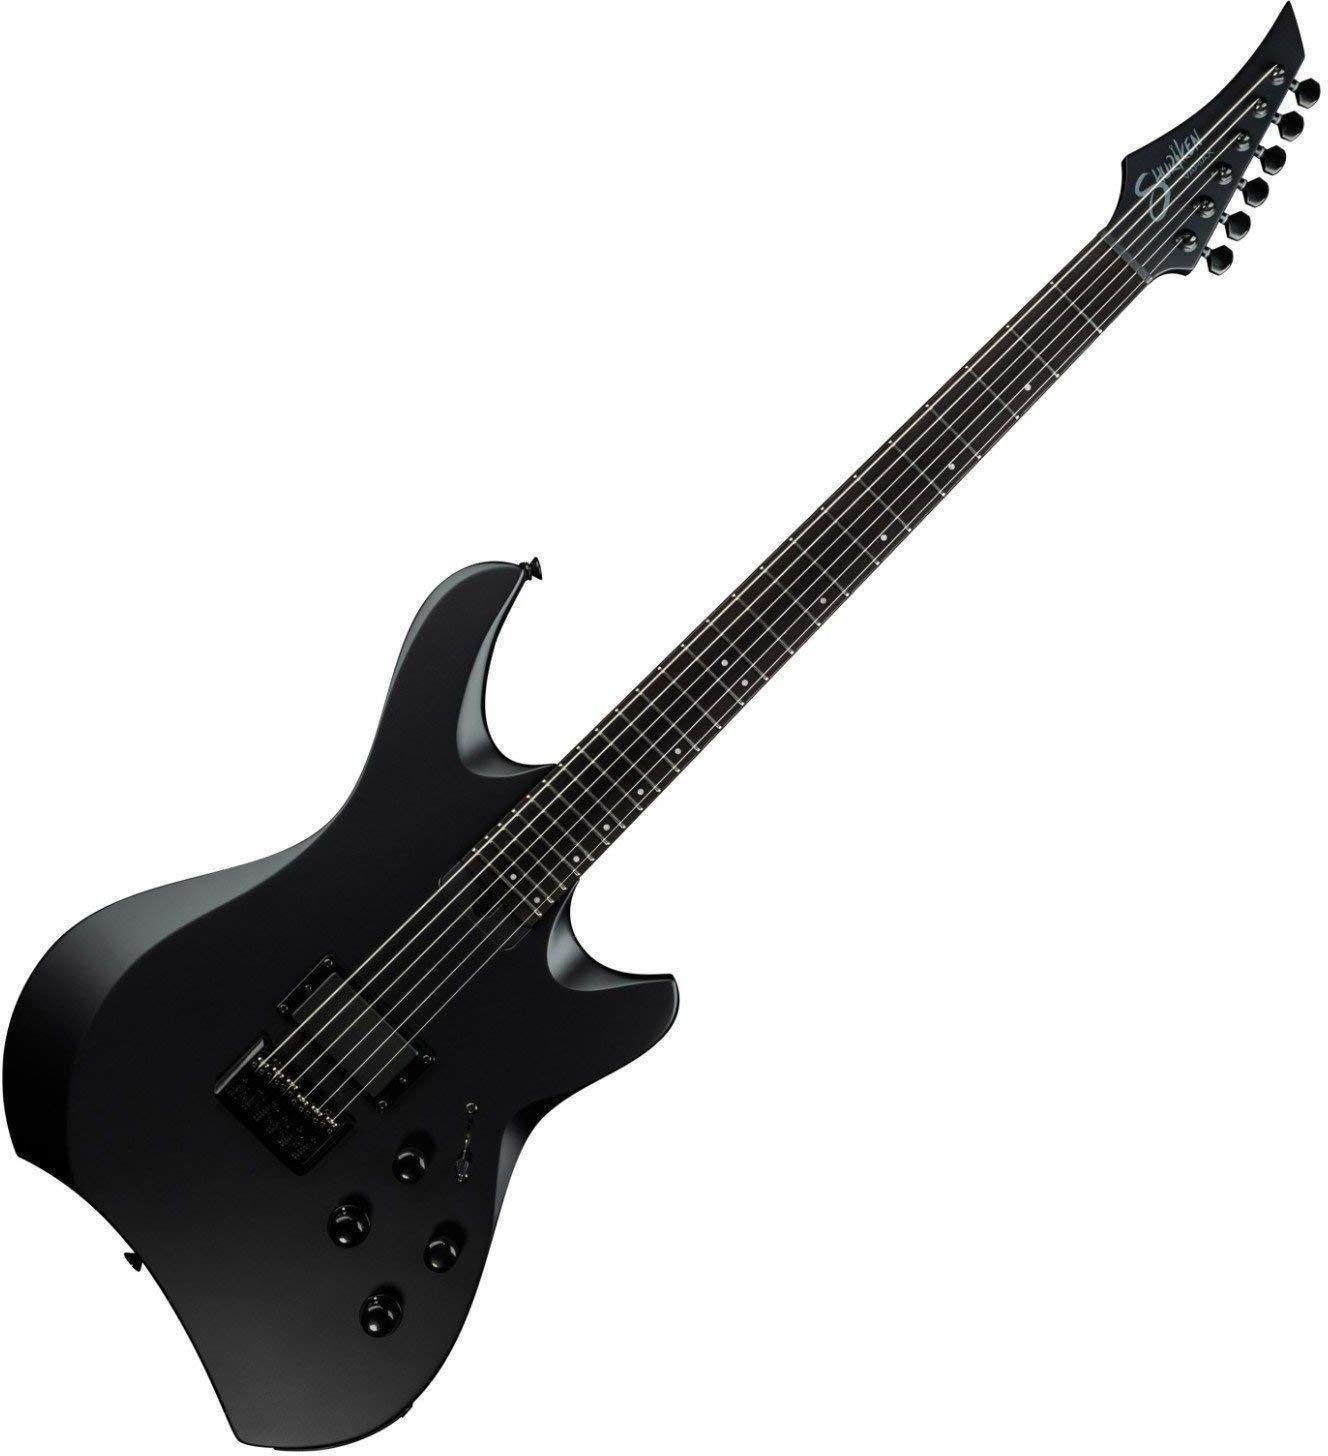 Guitarra electrica Line6 Shuriken Variax SR270